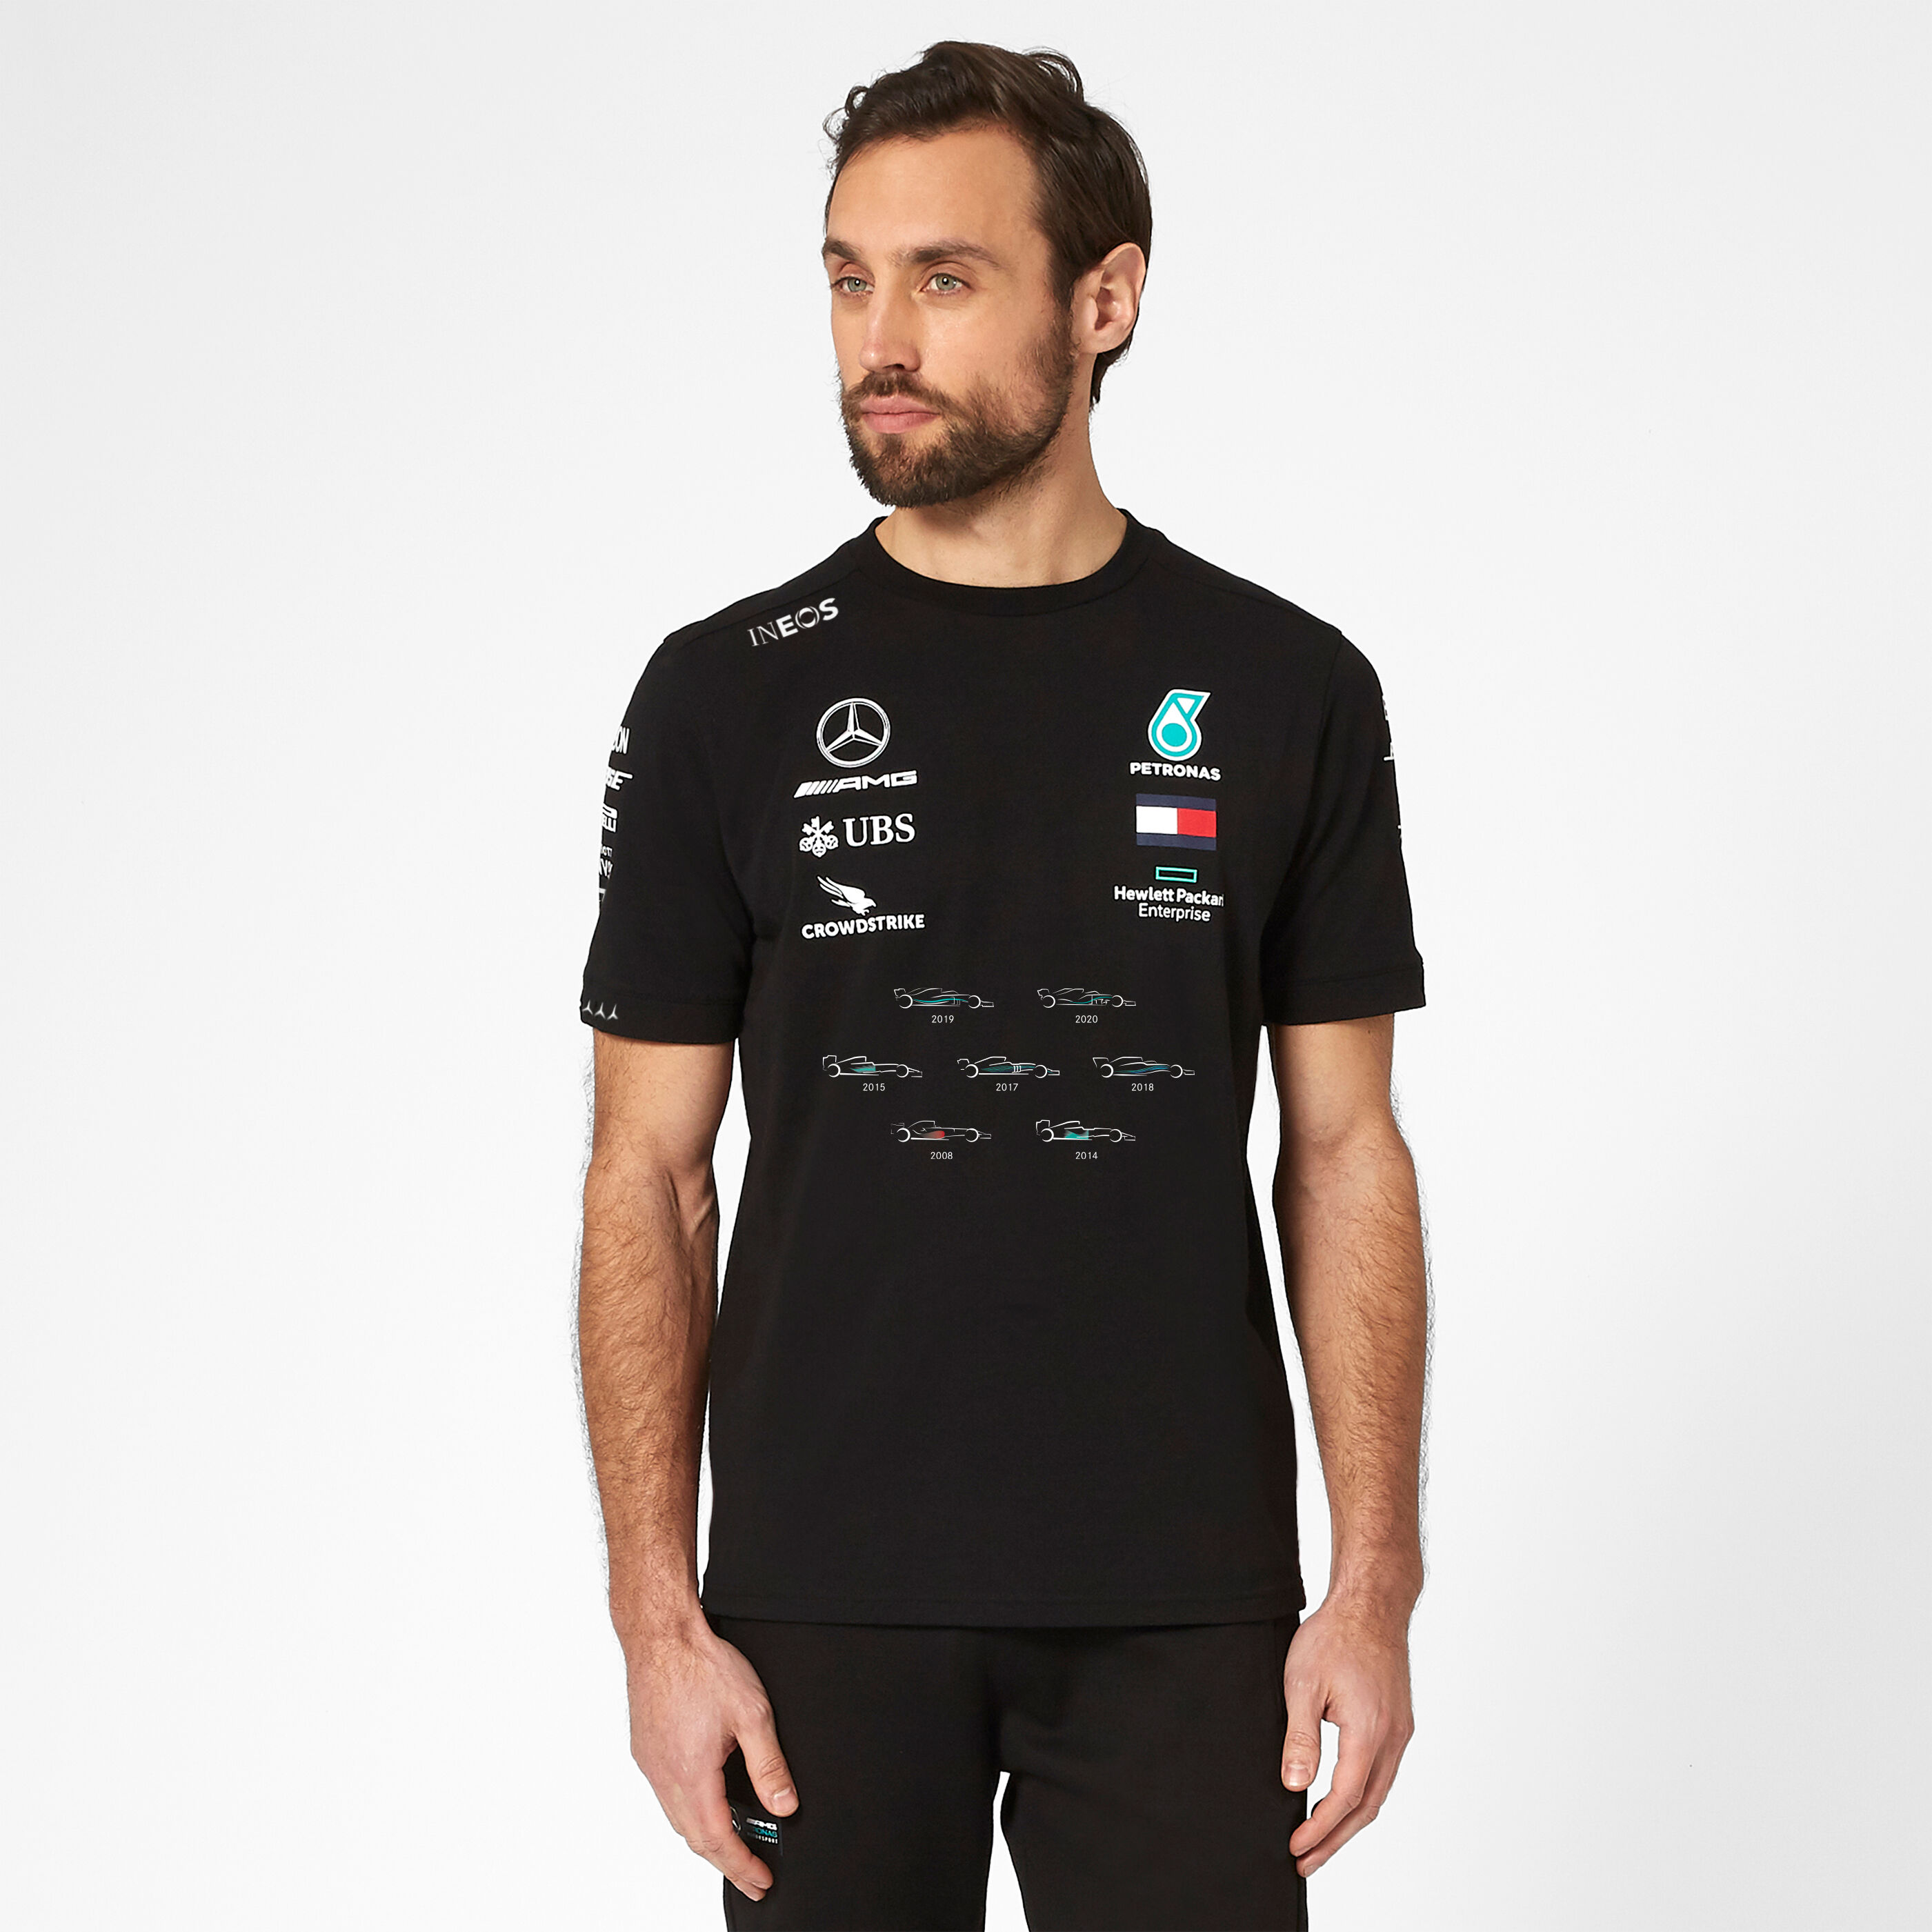 XS Blanc Fuel For Fans T-Shirt à Manches Longues de léquipe de Formule 1 2020 Mercedes-AMG Petronas